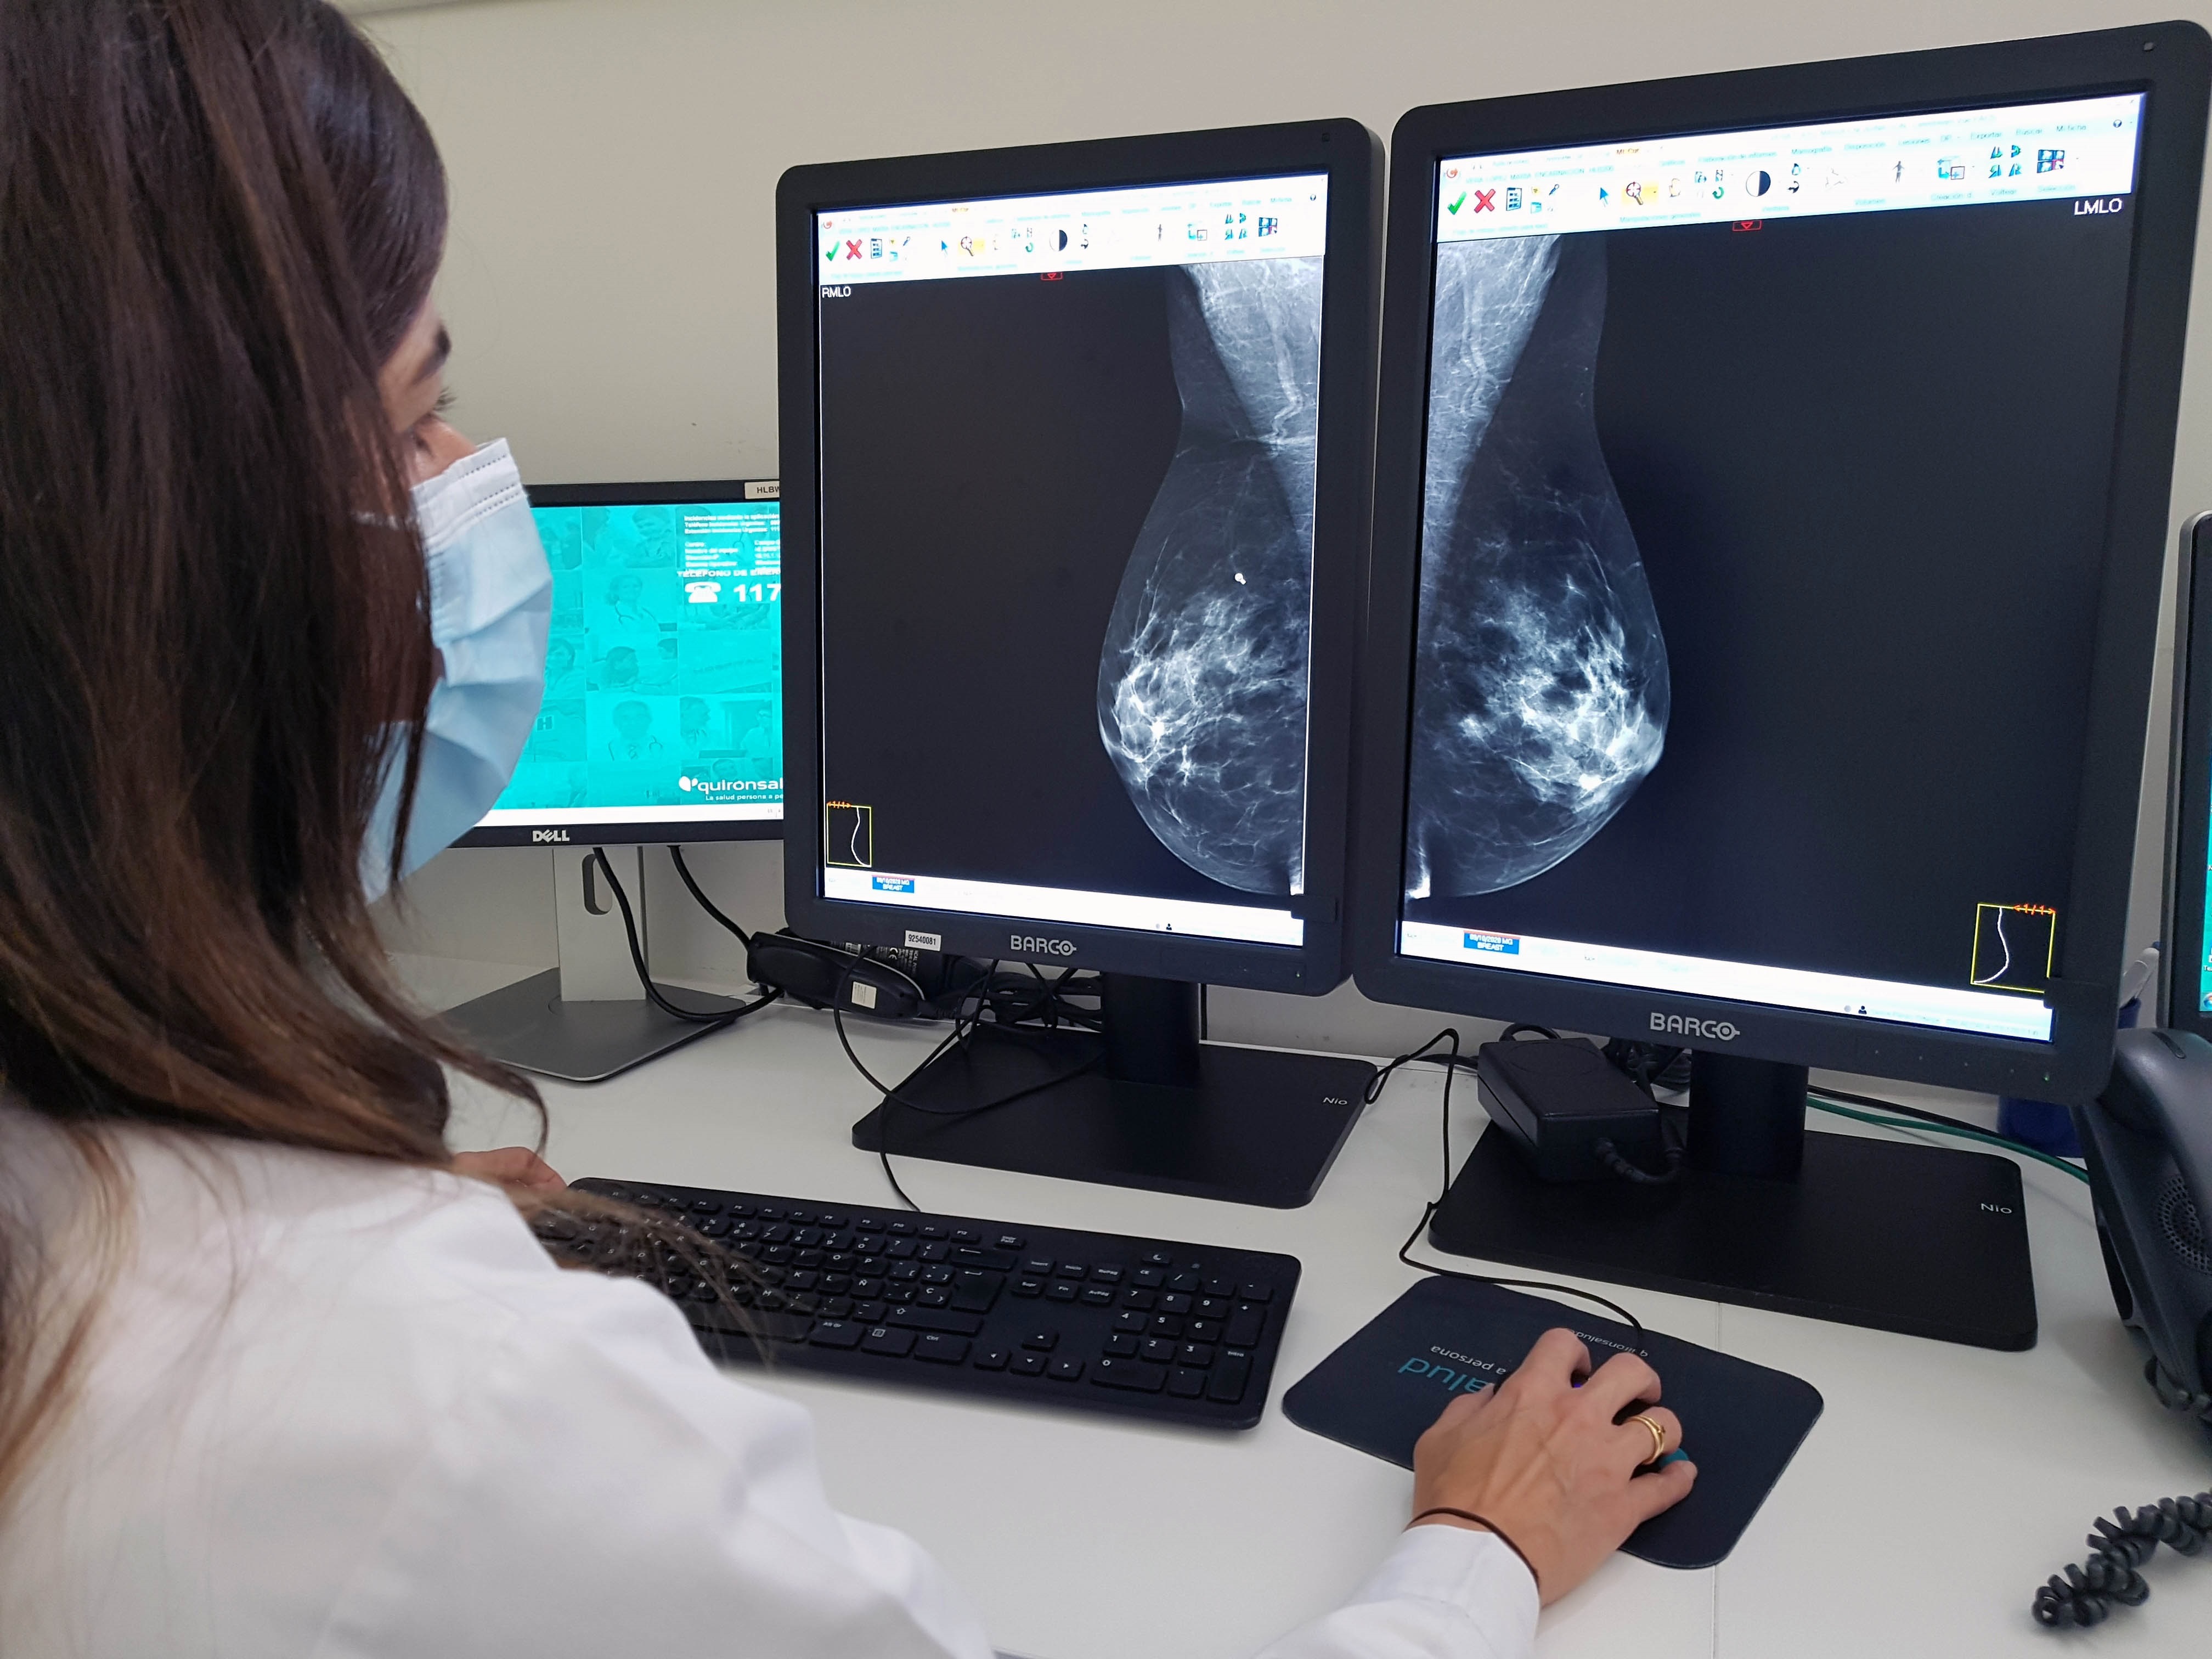 La aparición difusa de nódulos y la secreción por el pezón pueden ser señales de displasia mamaria (Europa Press)